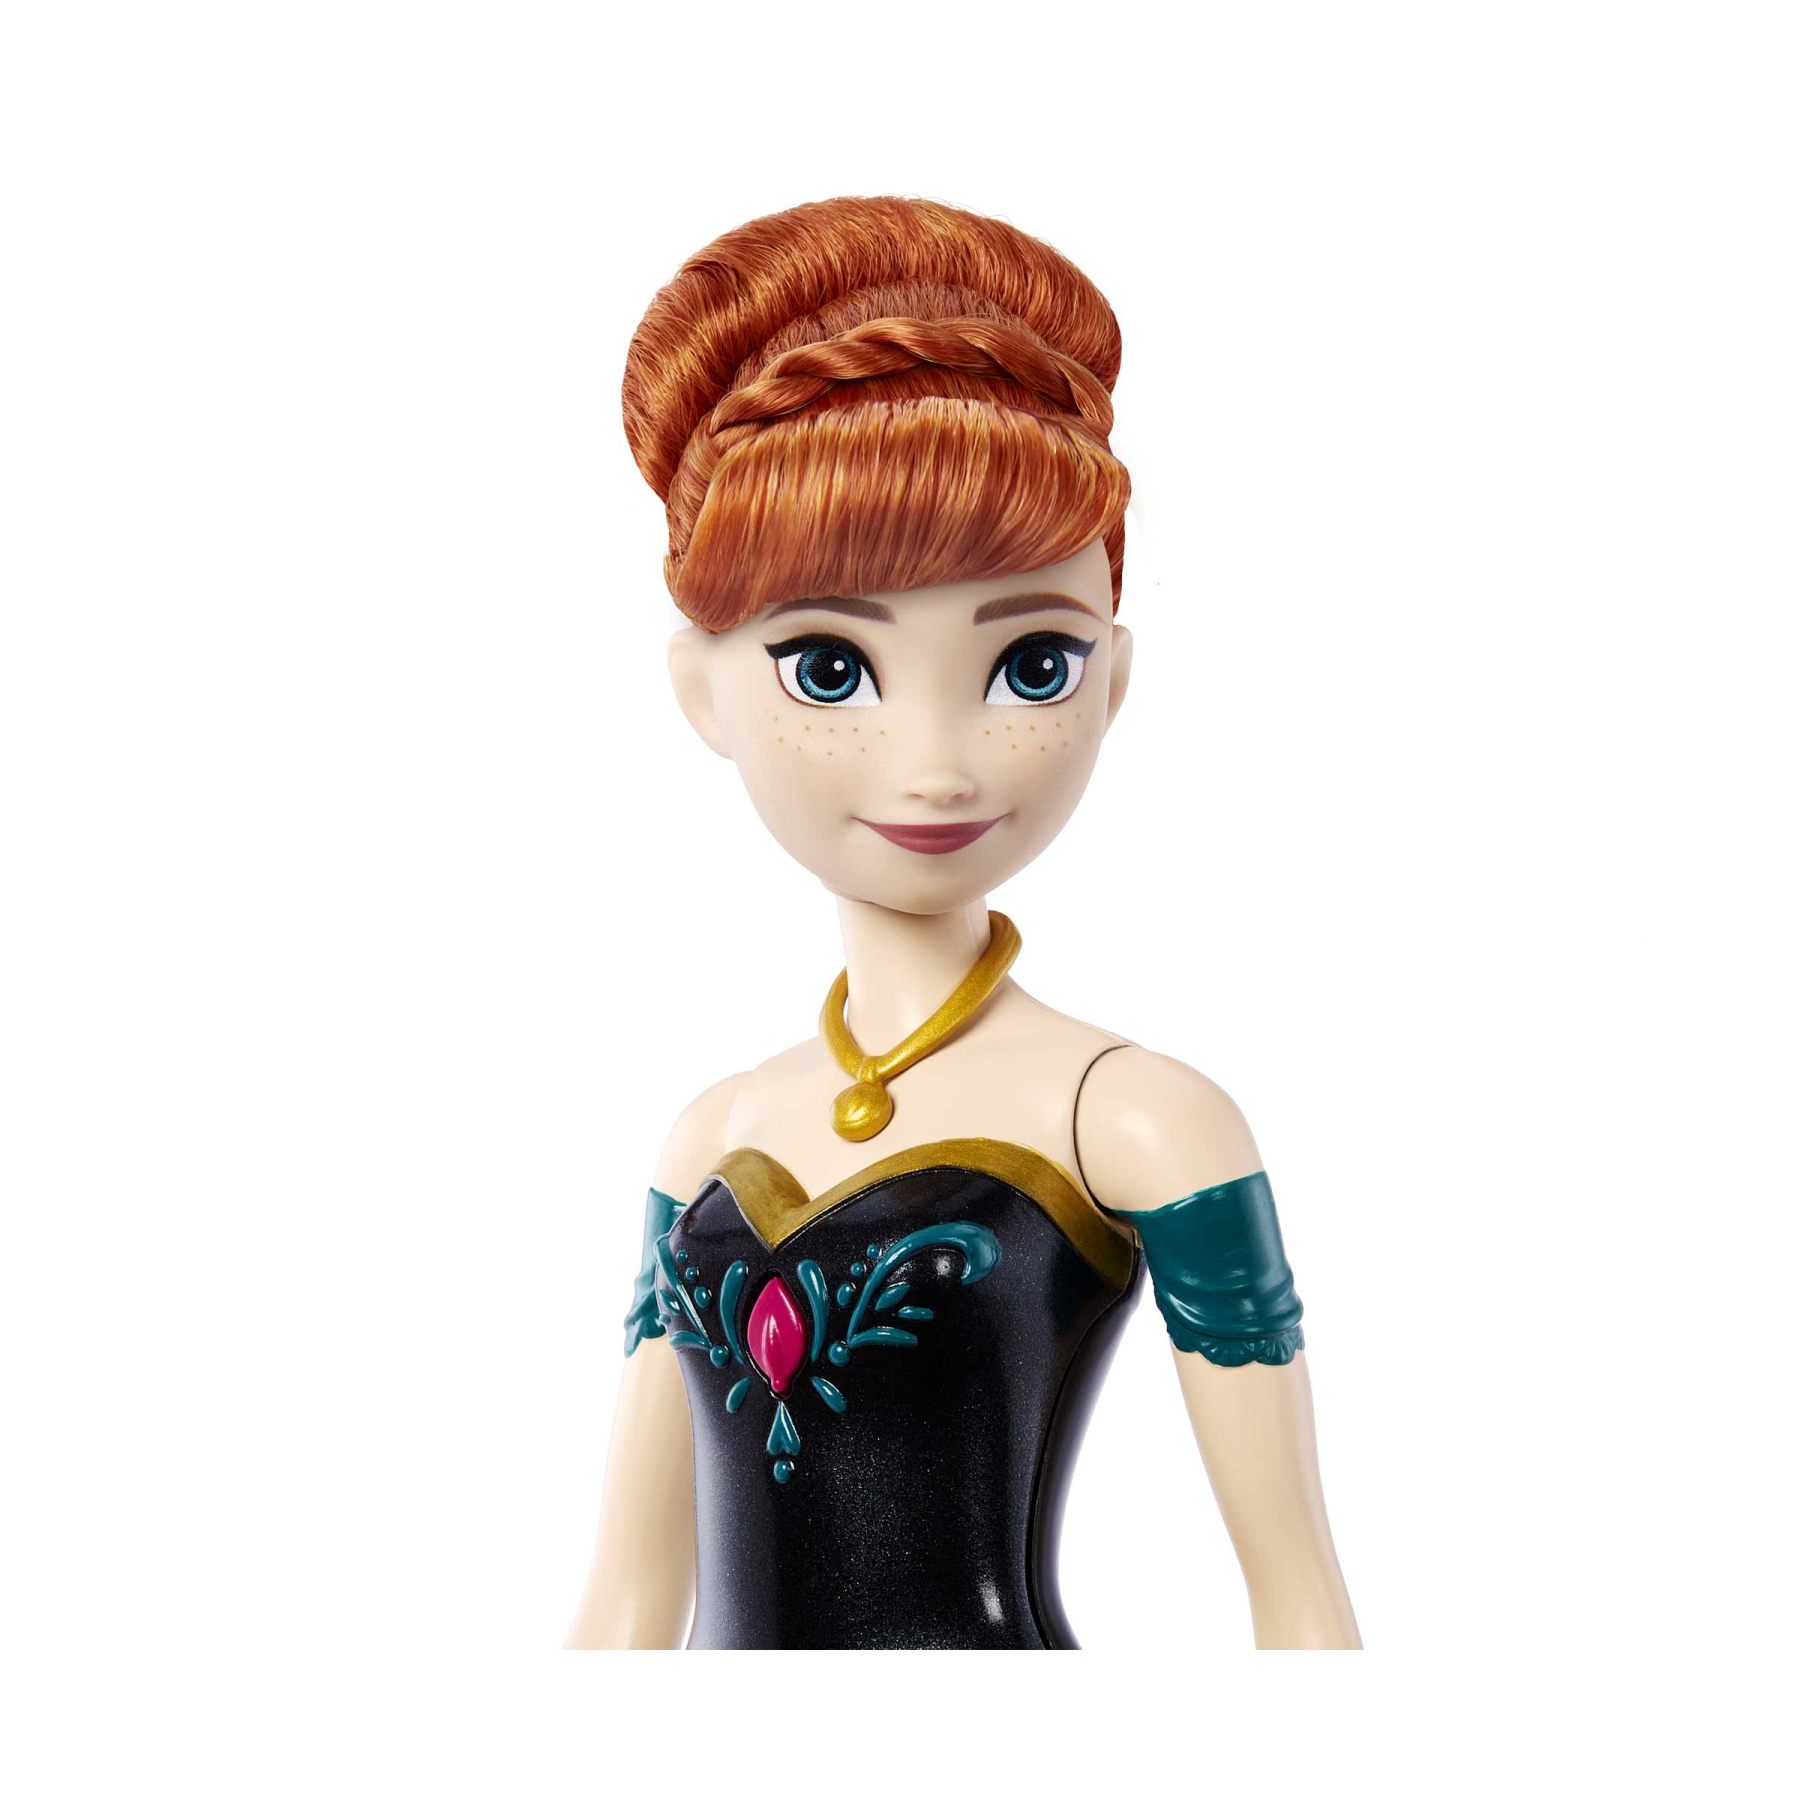 Disney frozen - anna oggi per la prima volta, bambola con look esclusivo, canta “oggi, per la prima volta” dal film disney frozen, giocattolo per bambini, 3+ anni, hmg42 - DISNEY PRINCESS, Frozen